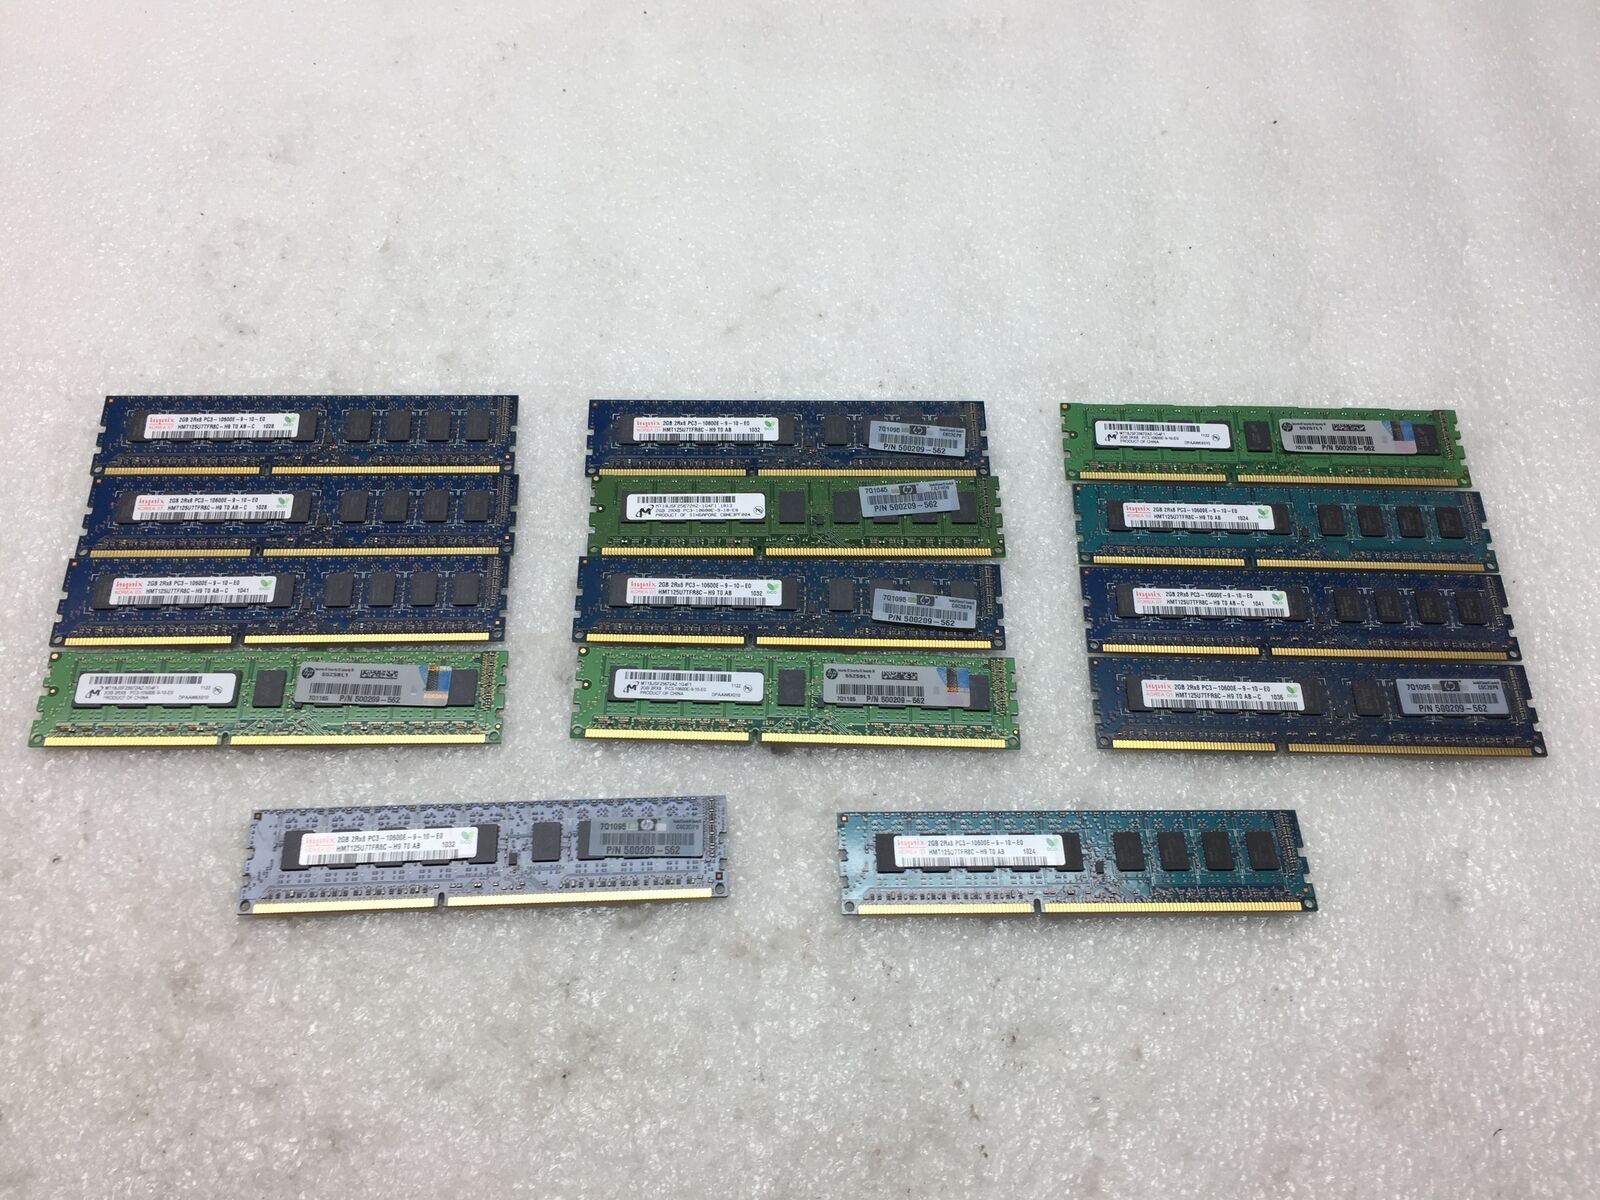 Lot of 14 2GB Mixed Brand 2RX8 PC3-10600E-9-10-E0 ECC Server Memory/RAM Sticks